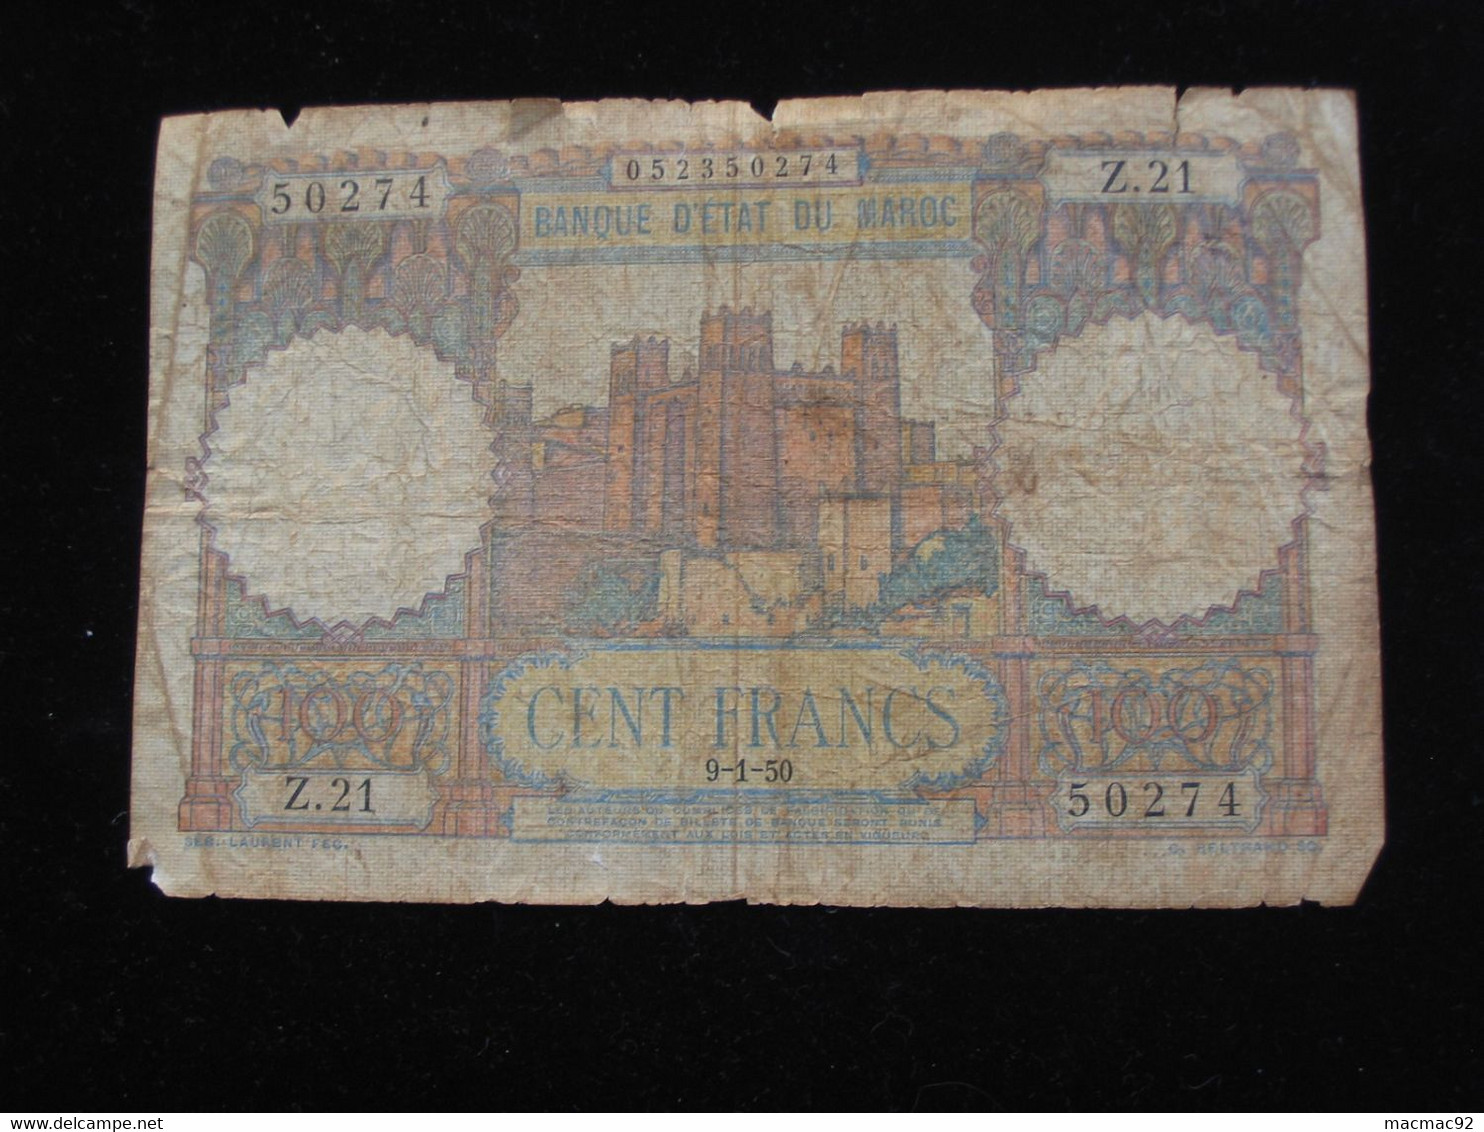 Maroc - 100 Cent Francs 9-1-1950 - Banque D'état Du Maroc   **** EN ACHAT IMMEDIAT **** - Marocco